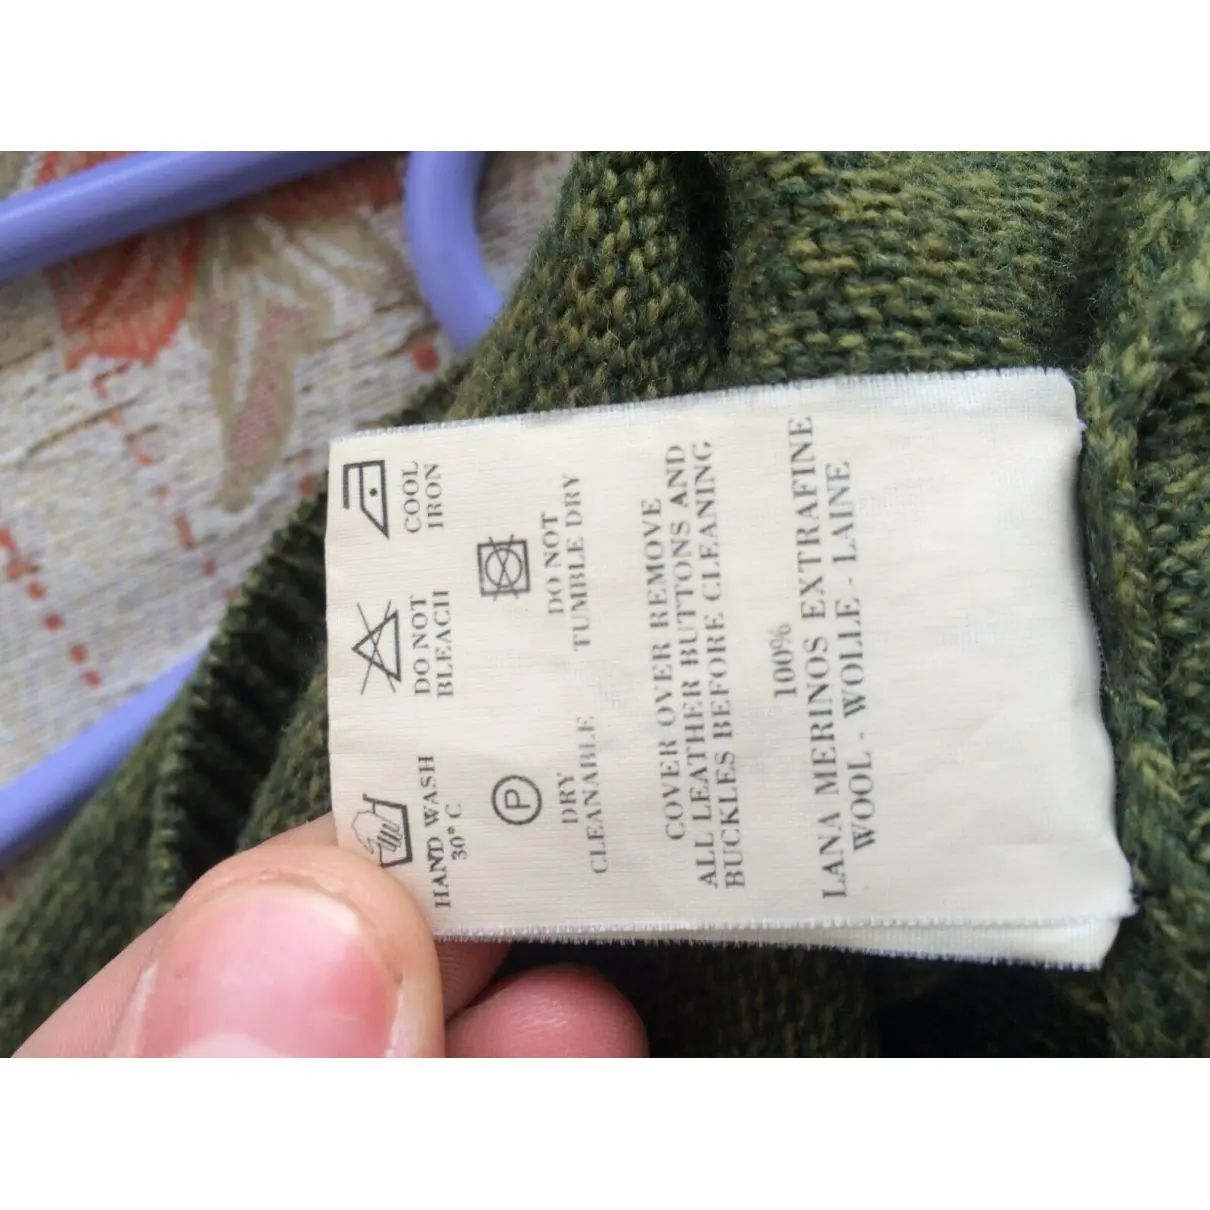 Buy Burberry Wool pull online - Vintage